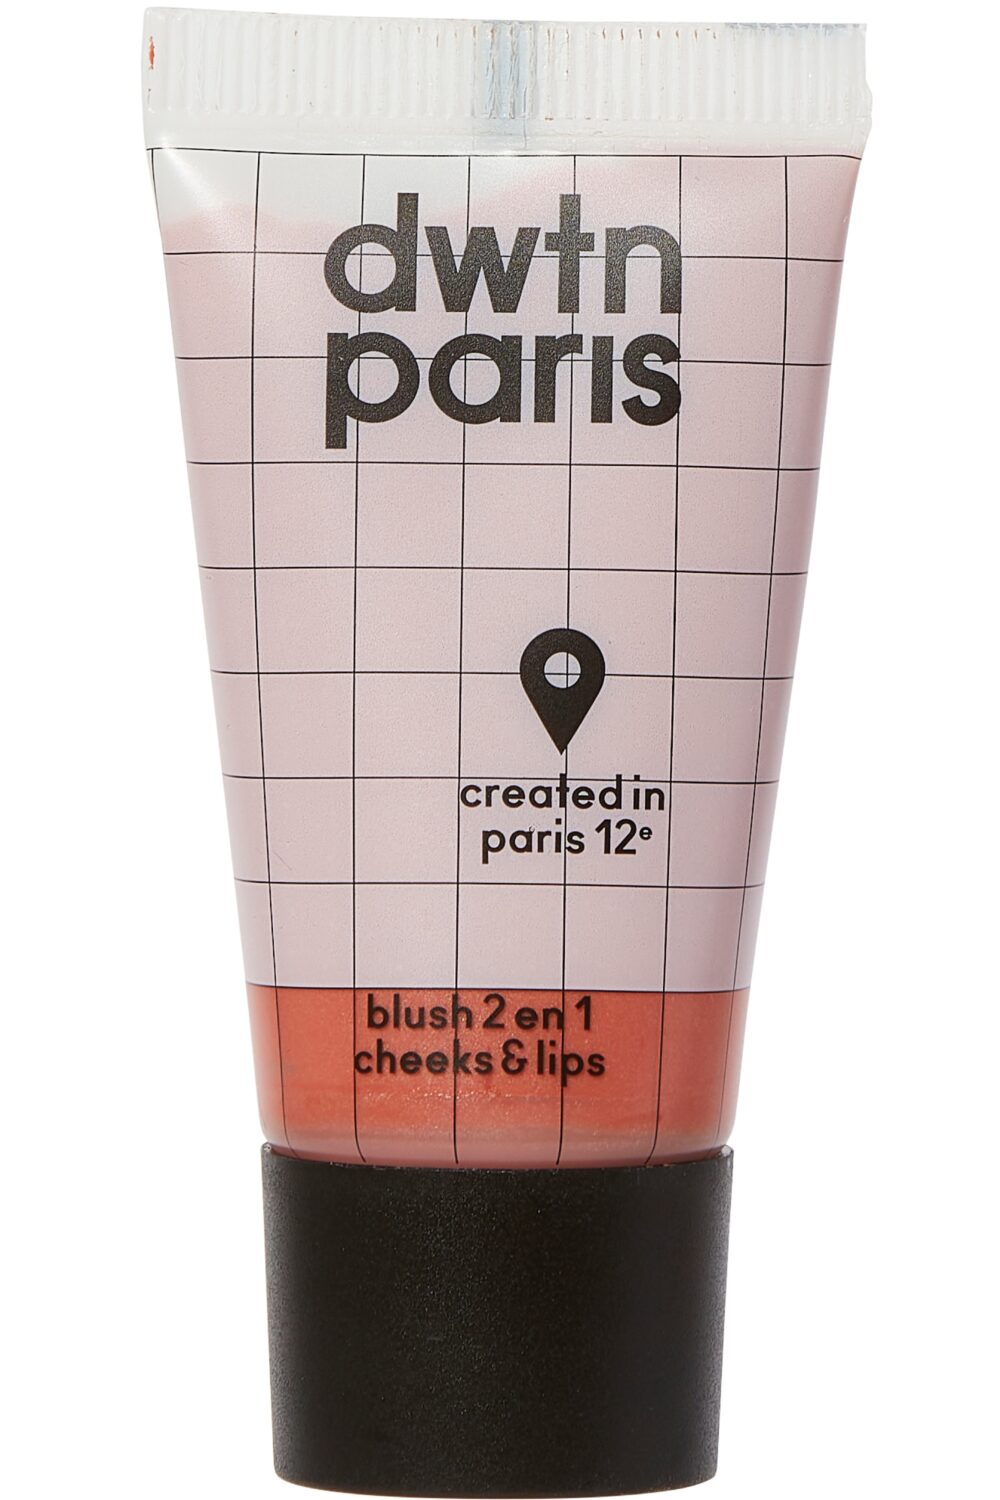 DWTN Paris - Blush 2-en-1 Lip & Cheeks